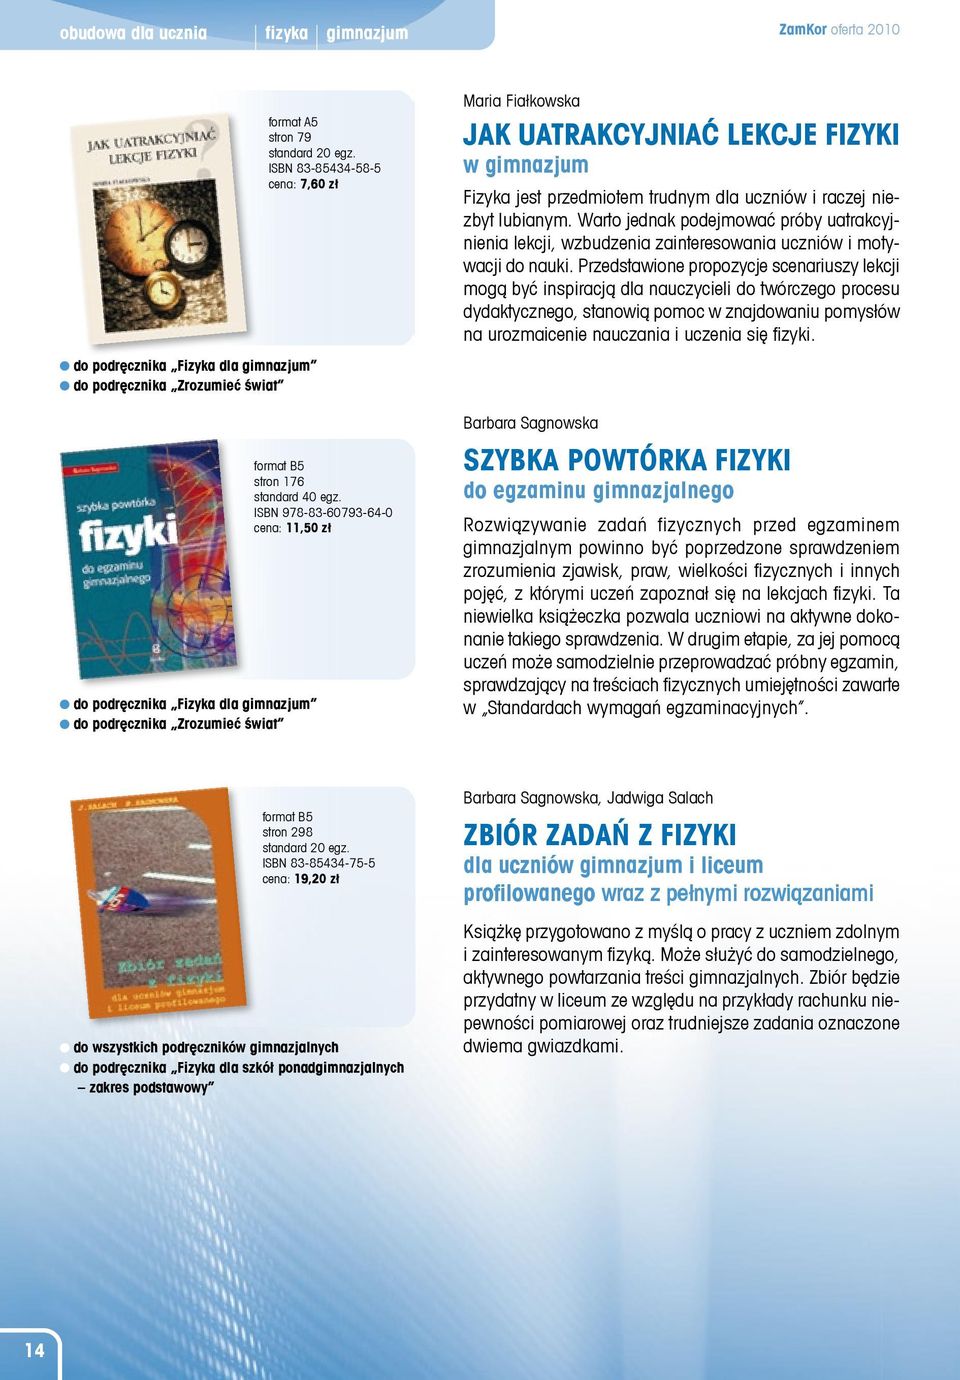 ISBN 978-83-60793-64-0 cena: 11,50 zł Maria Fia³kowska Jak uatrakcyjniaæ lekcje fizyki w gimnazjum Fizyka jest przedmiotem trudnym dla uczniów i raczej niezbyt lubianym.